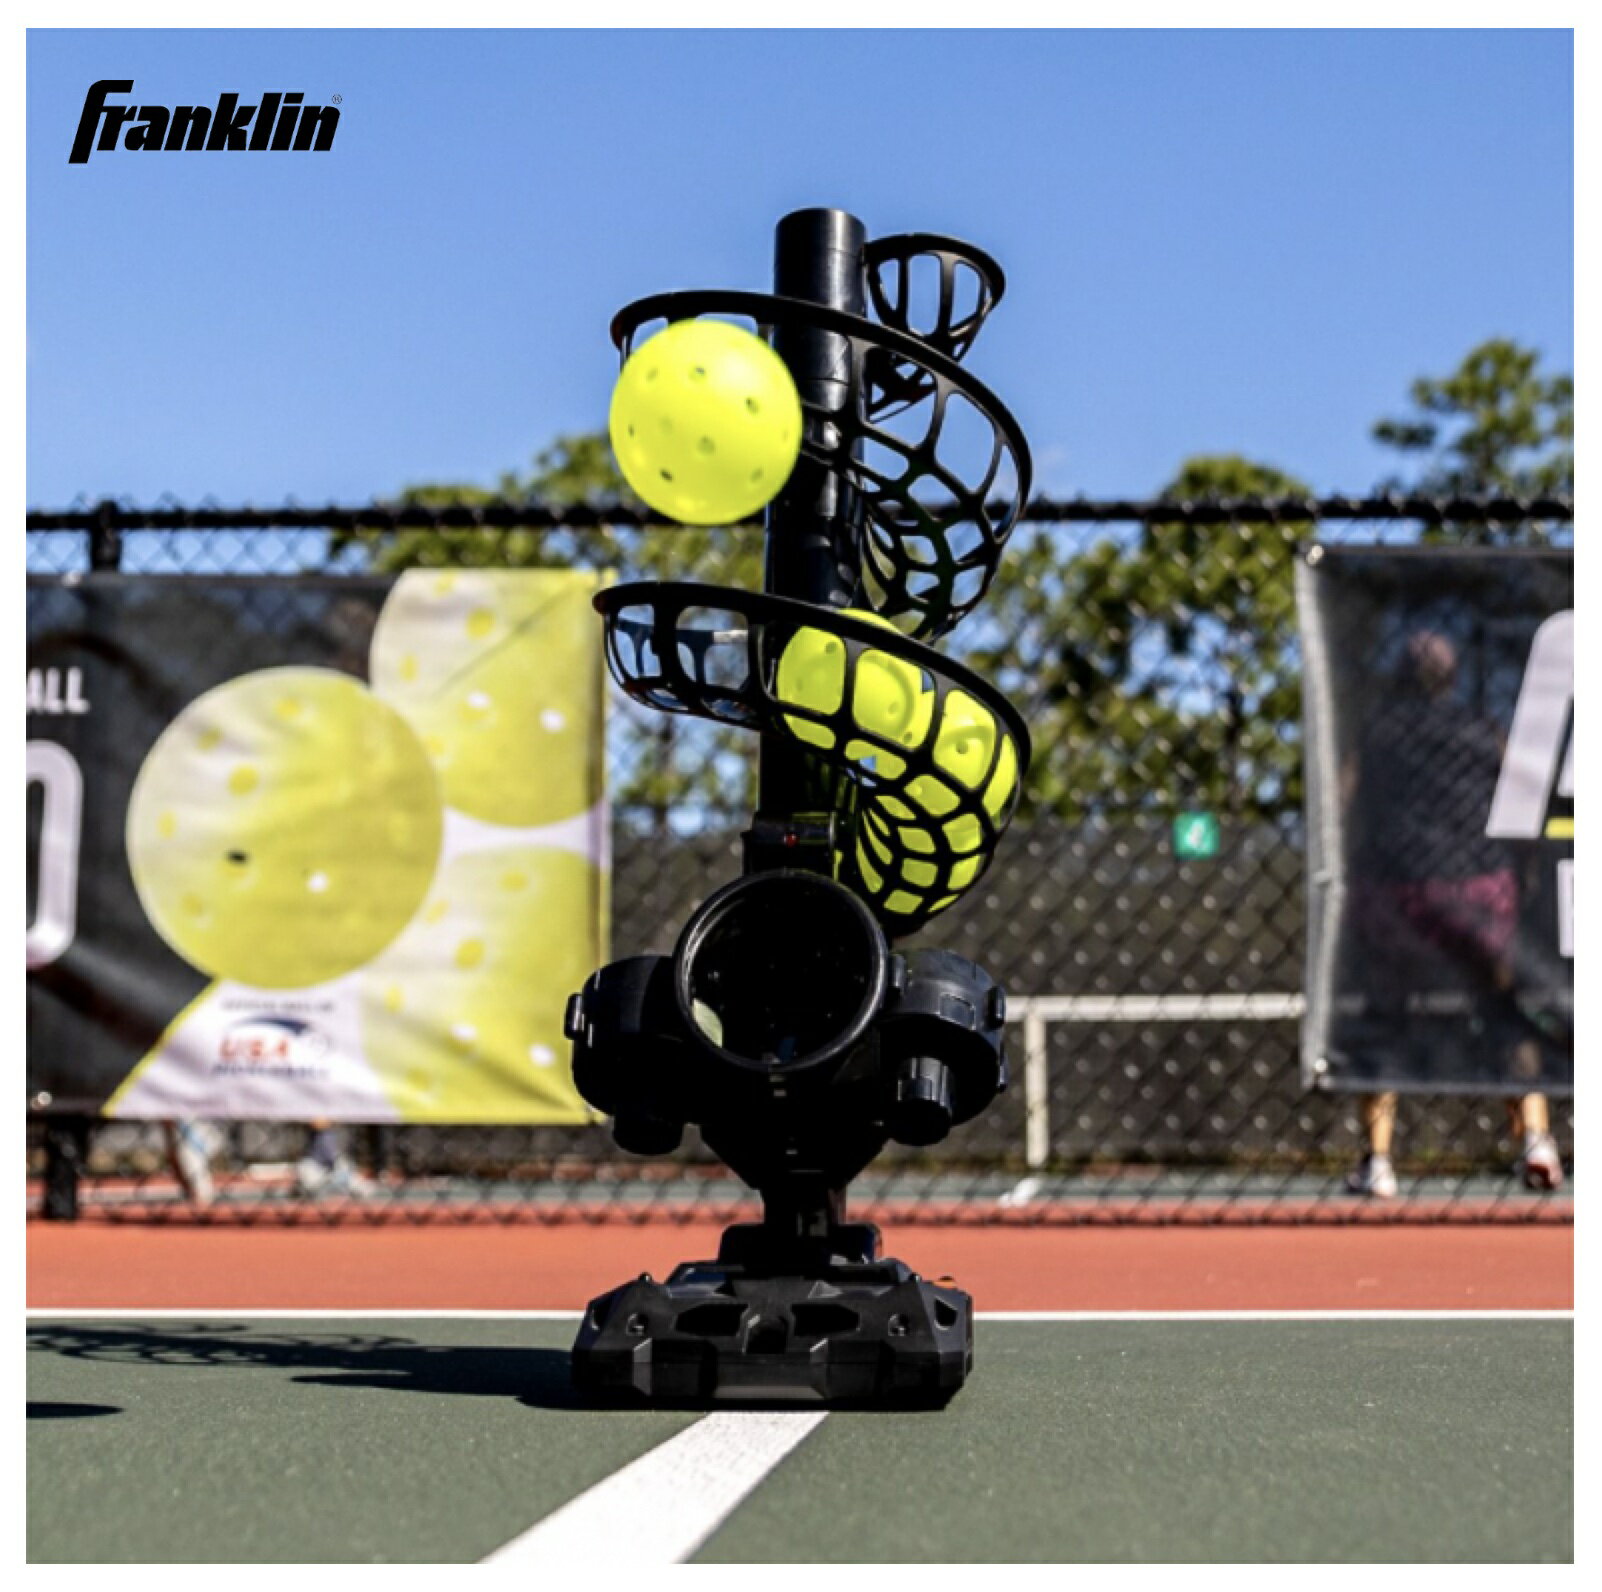 Franklin ピックルボール プロショット・ピックルボーラー ピックルボール練習マシン コンパクトで持ち運びに便利なピックルボール用具。一度に15個のピックルボールを入れることができます。トップスピン、サイドスピン、バックスピン、サーブレシーブなどの練習が簡単に。 5